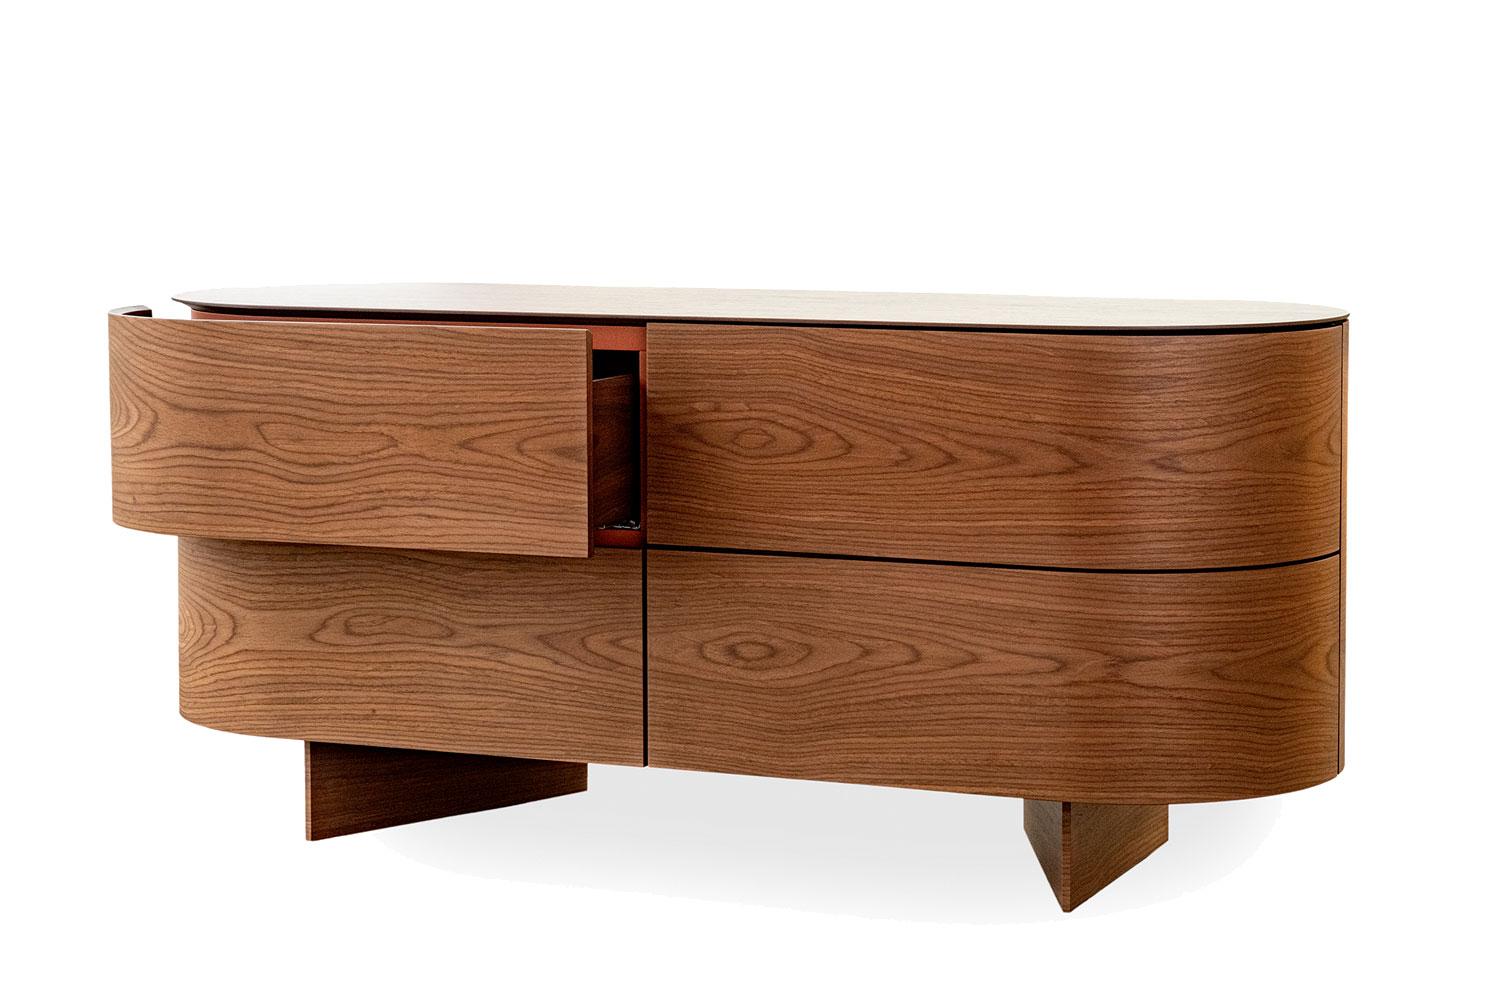 Cabinet Rondos de Cassina.

Rondos 558 01 est une crédence, une commode ou un meuble d'entrée à quatre tiroirs en finition noyer américain avec un plateau en bois.

Conçue par Patricia Urquiola, Rondos est une commode design aux contours doux et